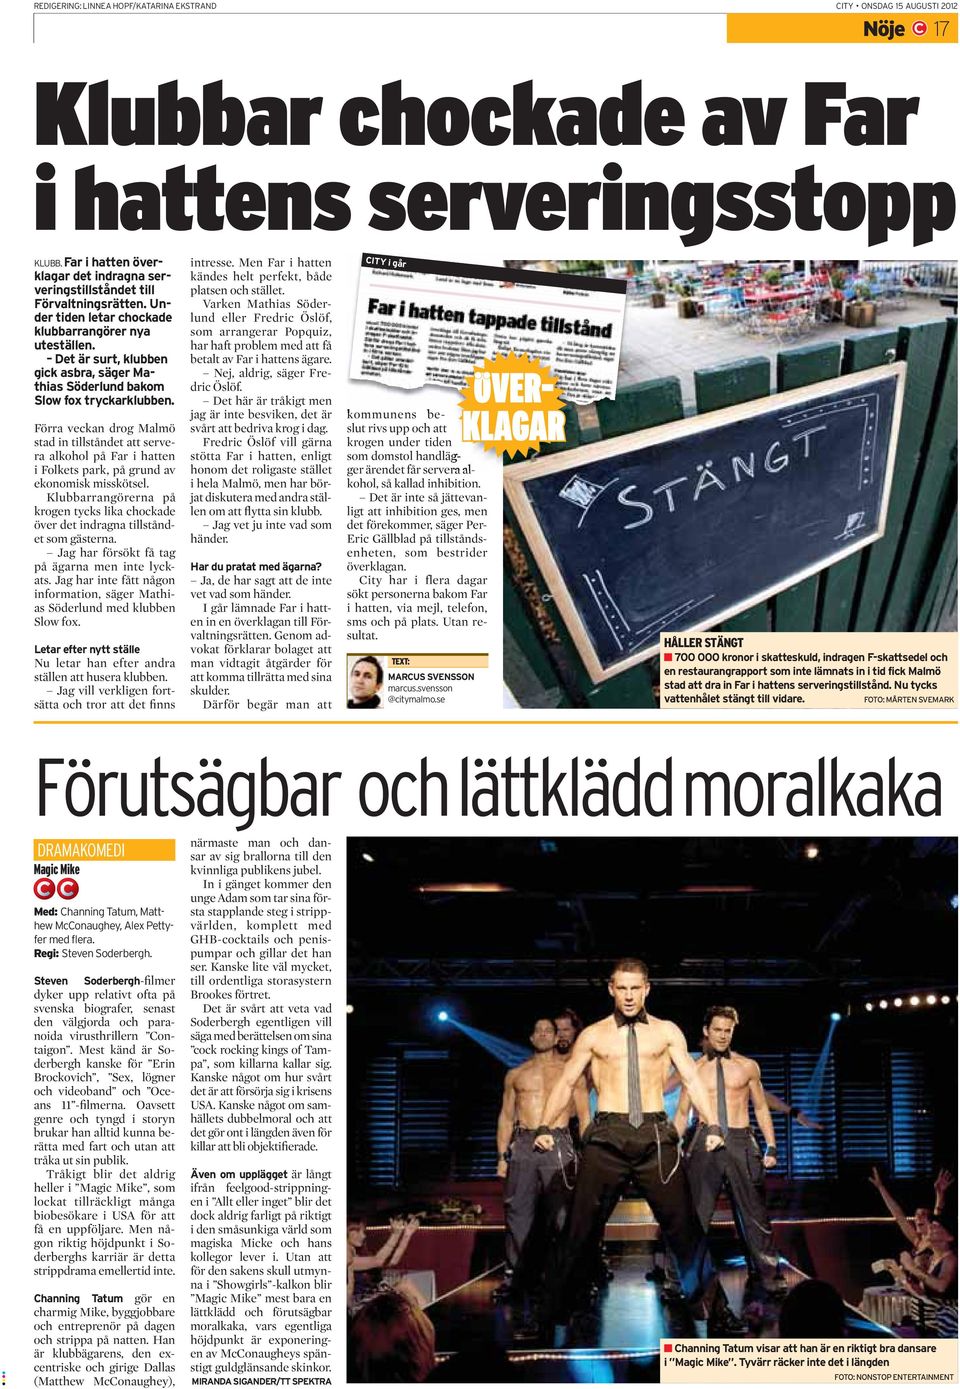 Det är surt, klubben gick asbra, säger Mathias Söderlund bakom Slow fox tryckarklubb en.